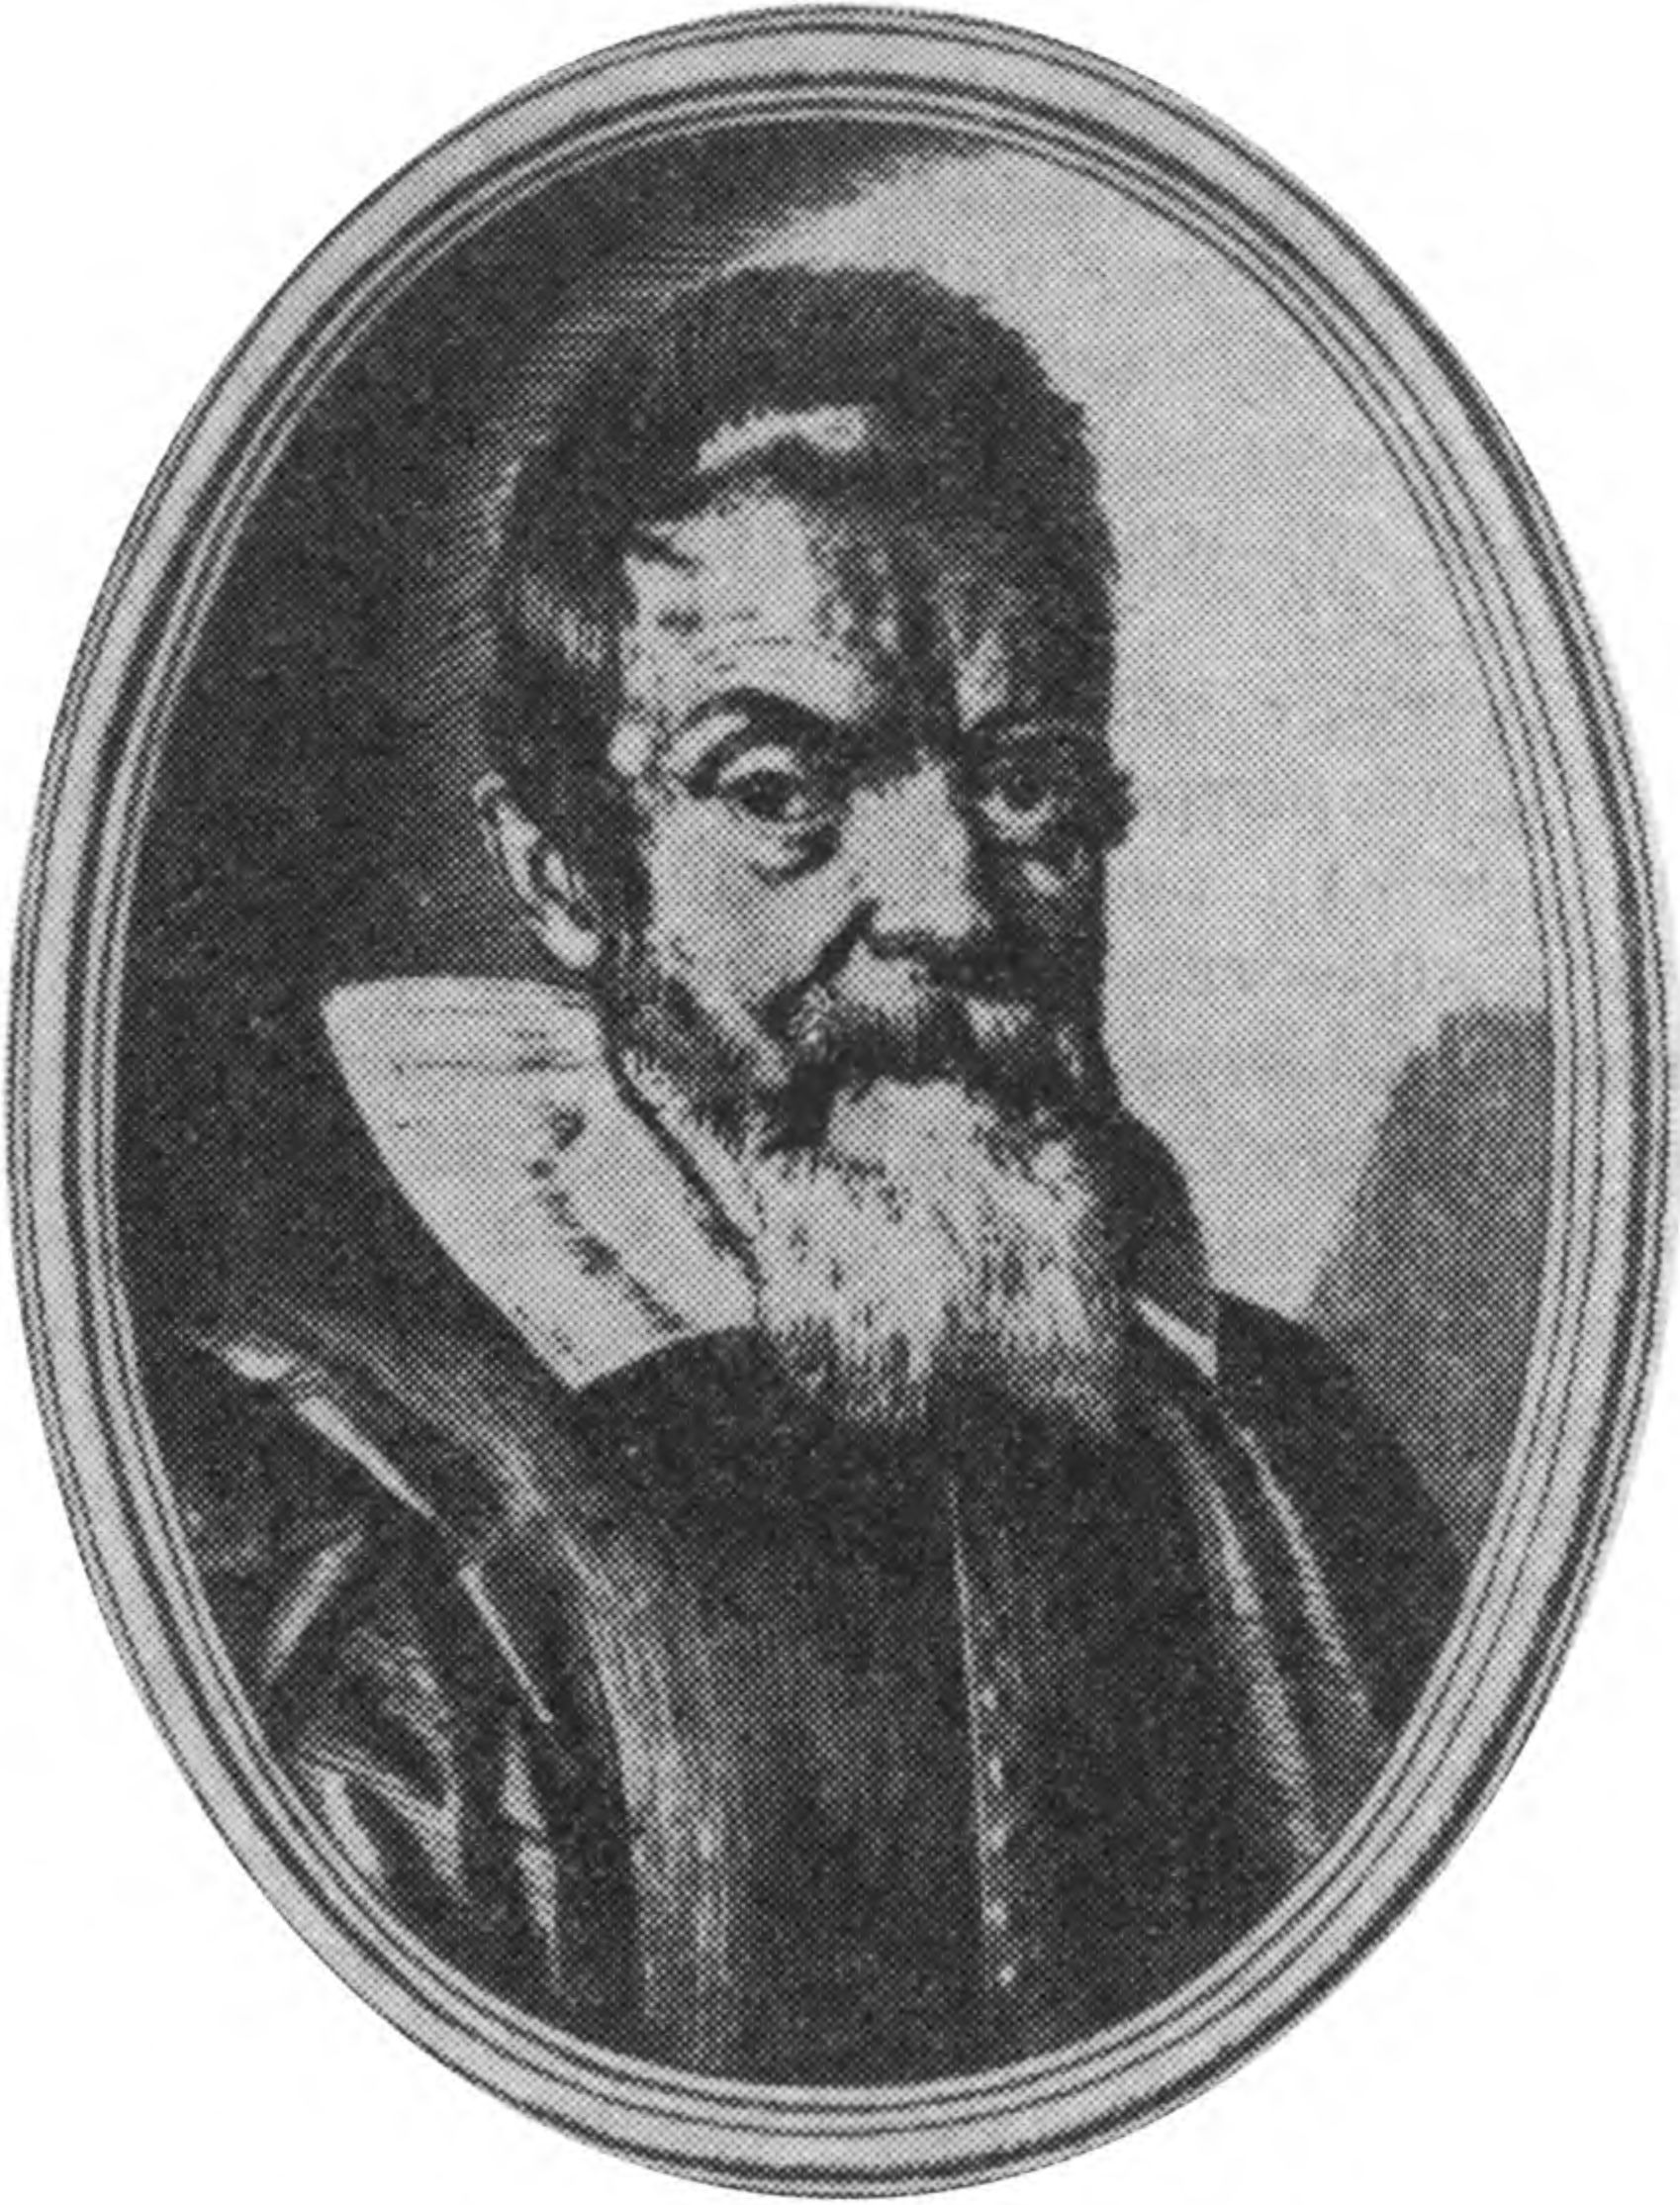 Рис. 3. Галилео Галилей в возрасте 60 лет. По гравюре Оттавио Леони, 1624 г. (Немецкий музей в Мюнхене). «Я думаю, что нет в мире большей ненависти, чем у невежества к знанию» [B 16] (Галилео Галилей)